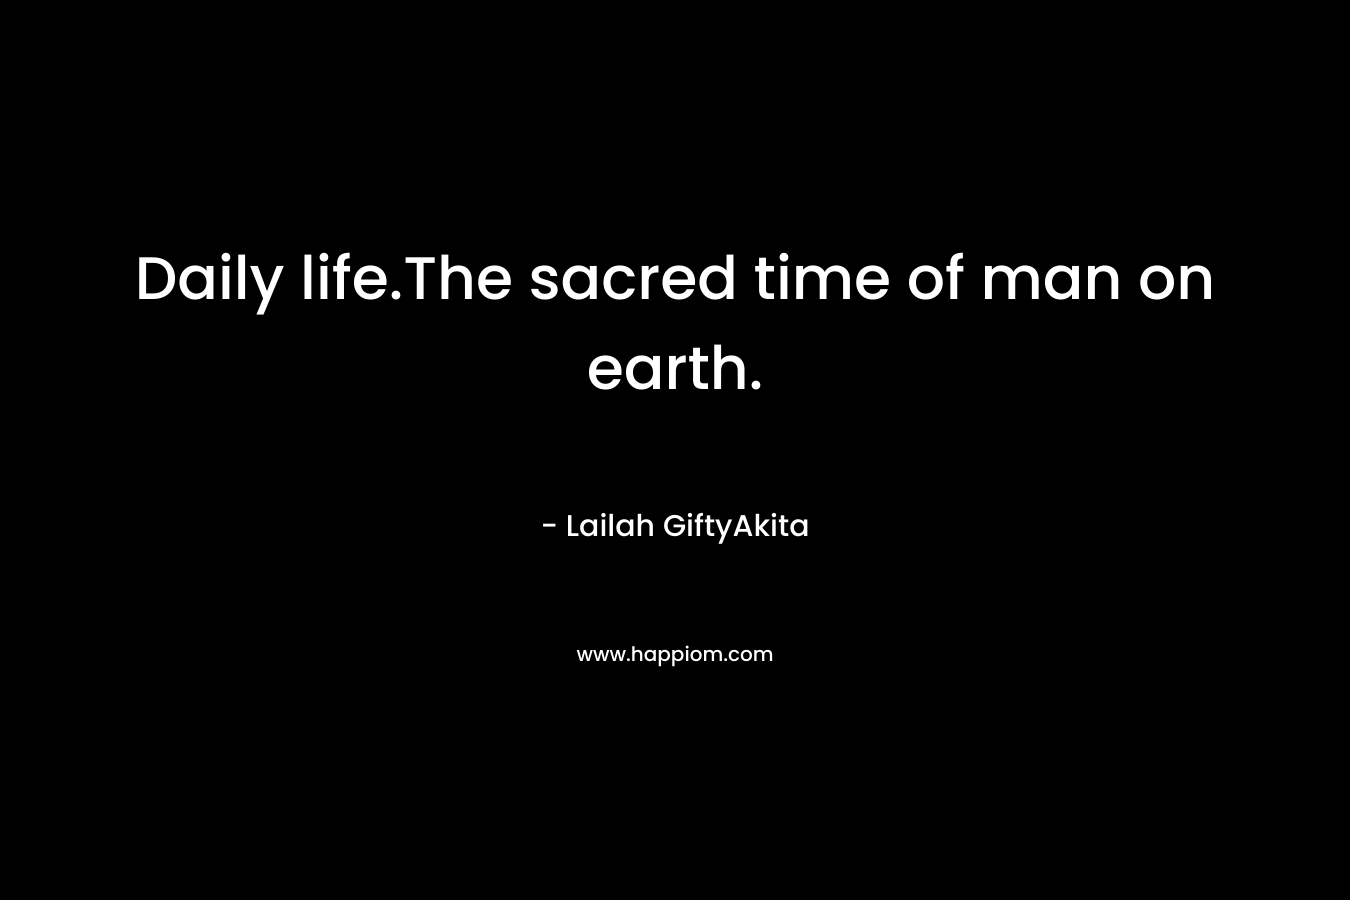 Daily life.The sacred time of man on earth. – Lailah GiftyAkita